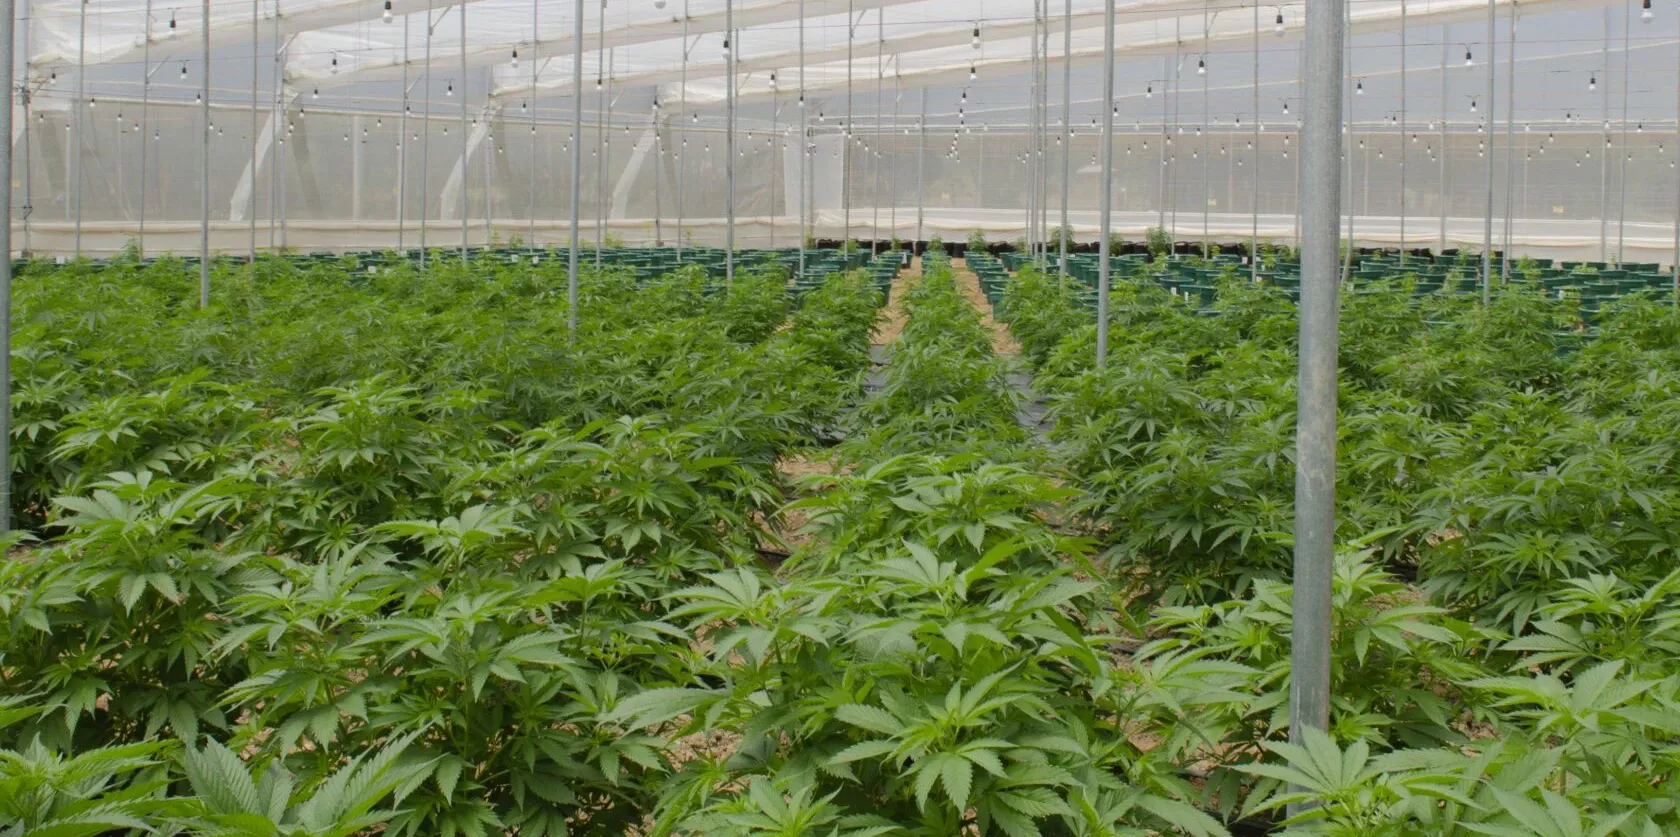 Cannabispflanzen in einem großen Gewächshaus